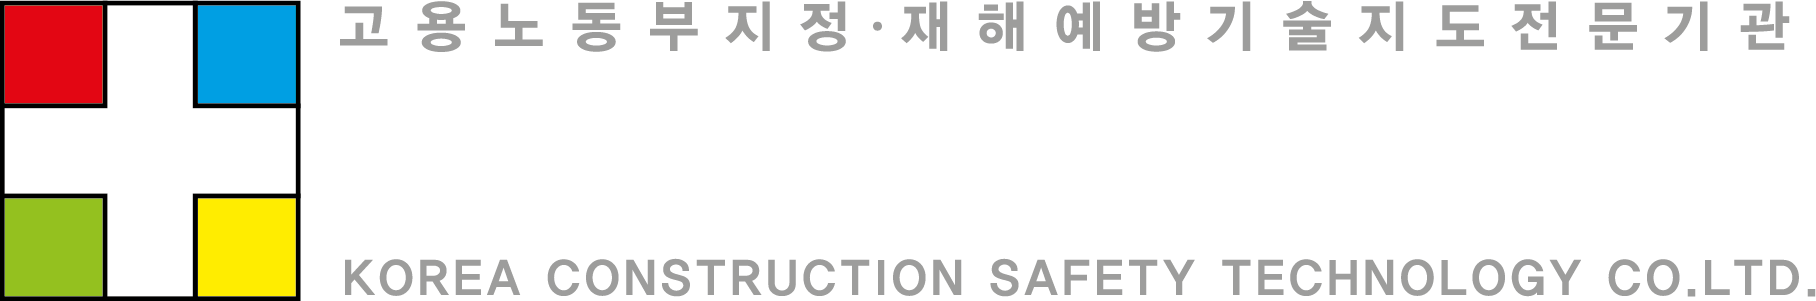 한국건전안전기술(주) 로고